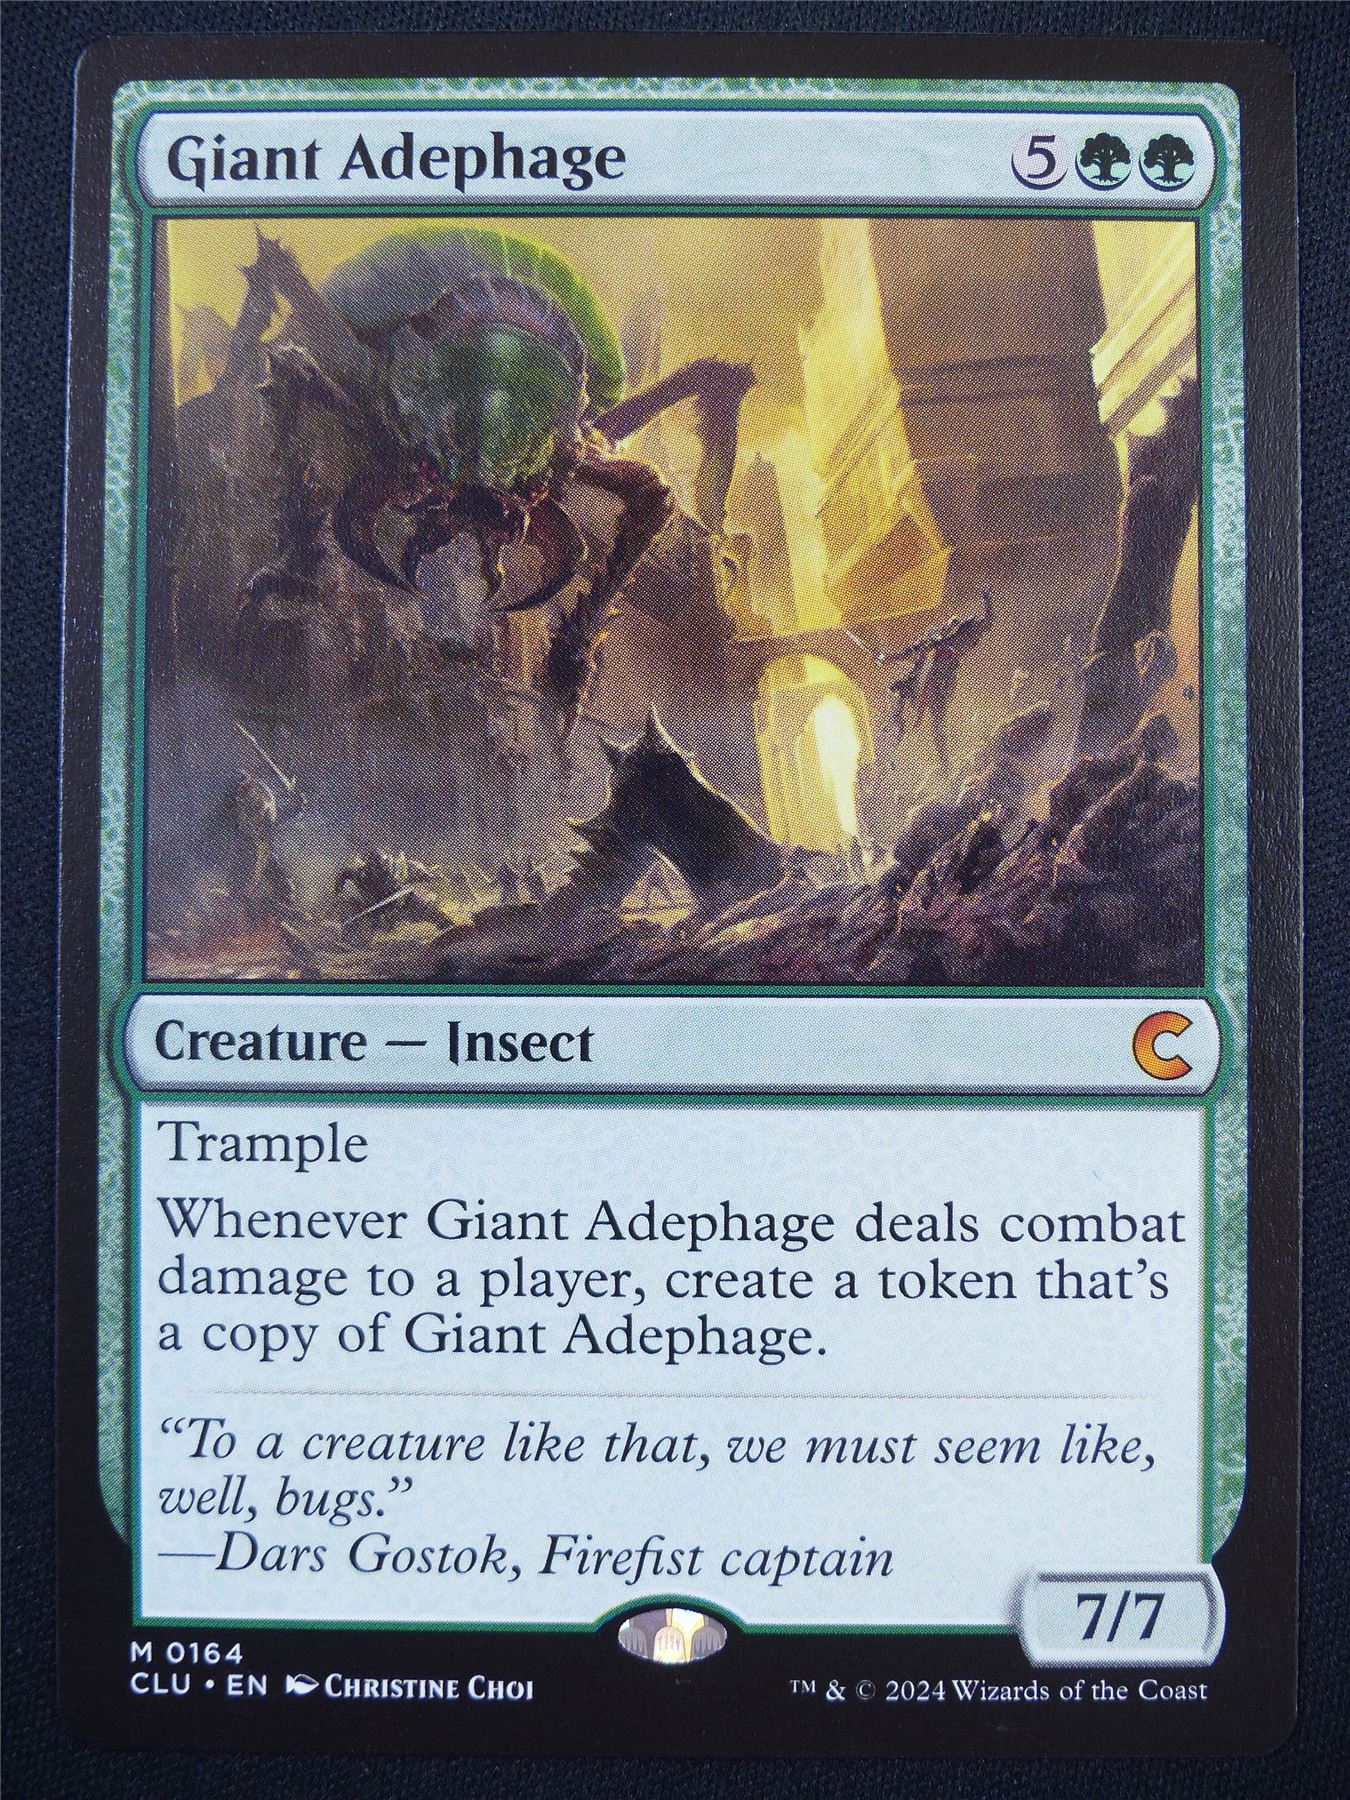 Giant Adephage - CLU - Mtg Card #5IA